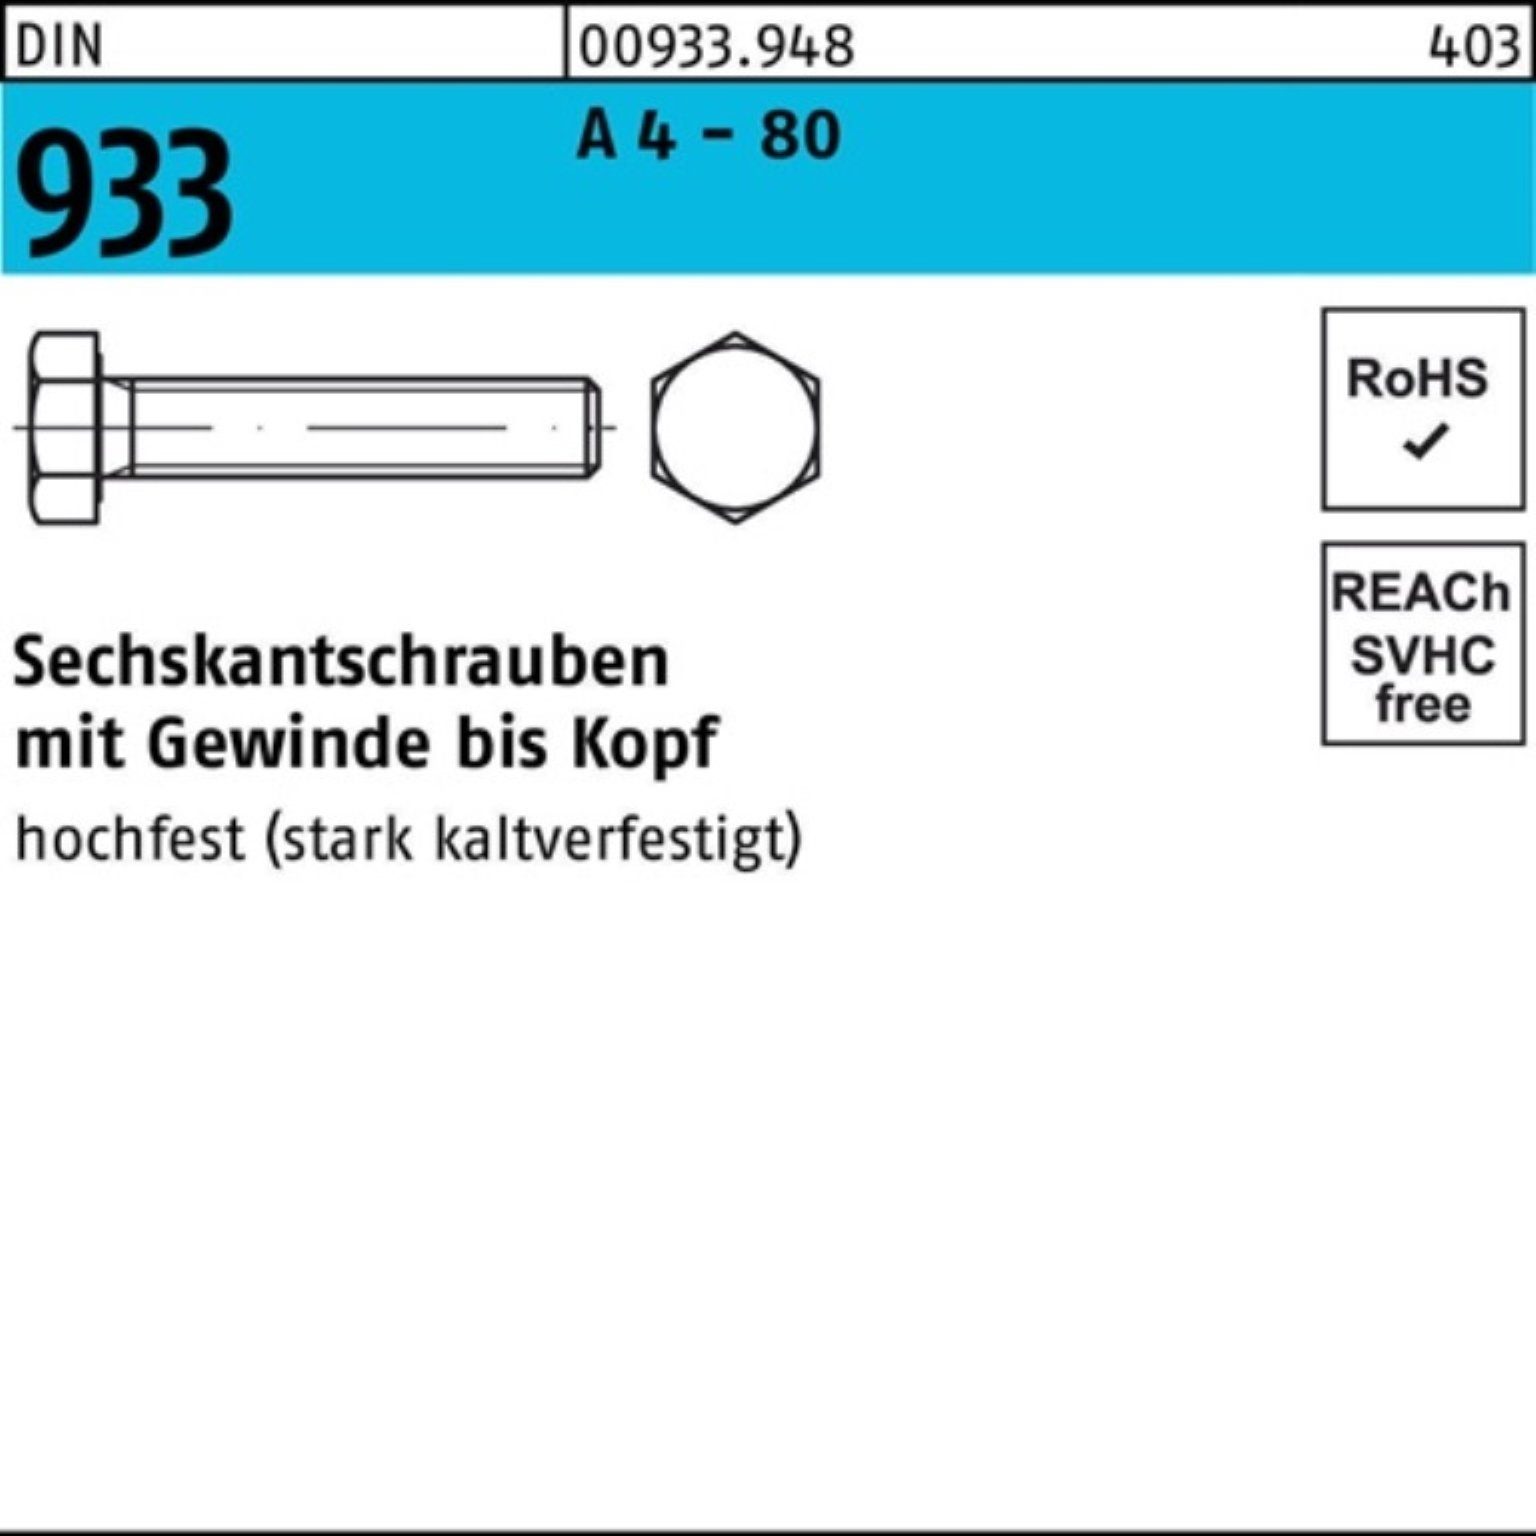 Reyher Sechskantschraube 100er Pack Sechskantschraube DIN 933 VG M12x 160 A 4 - 80 1 Stück DIN